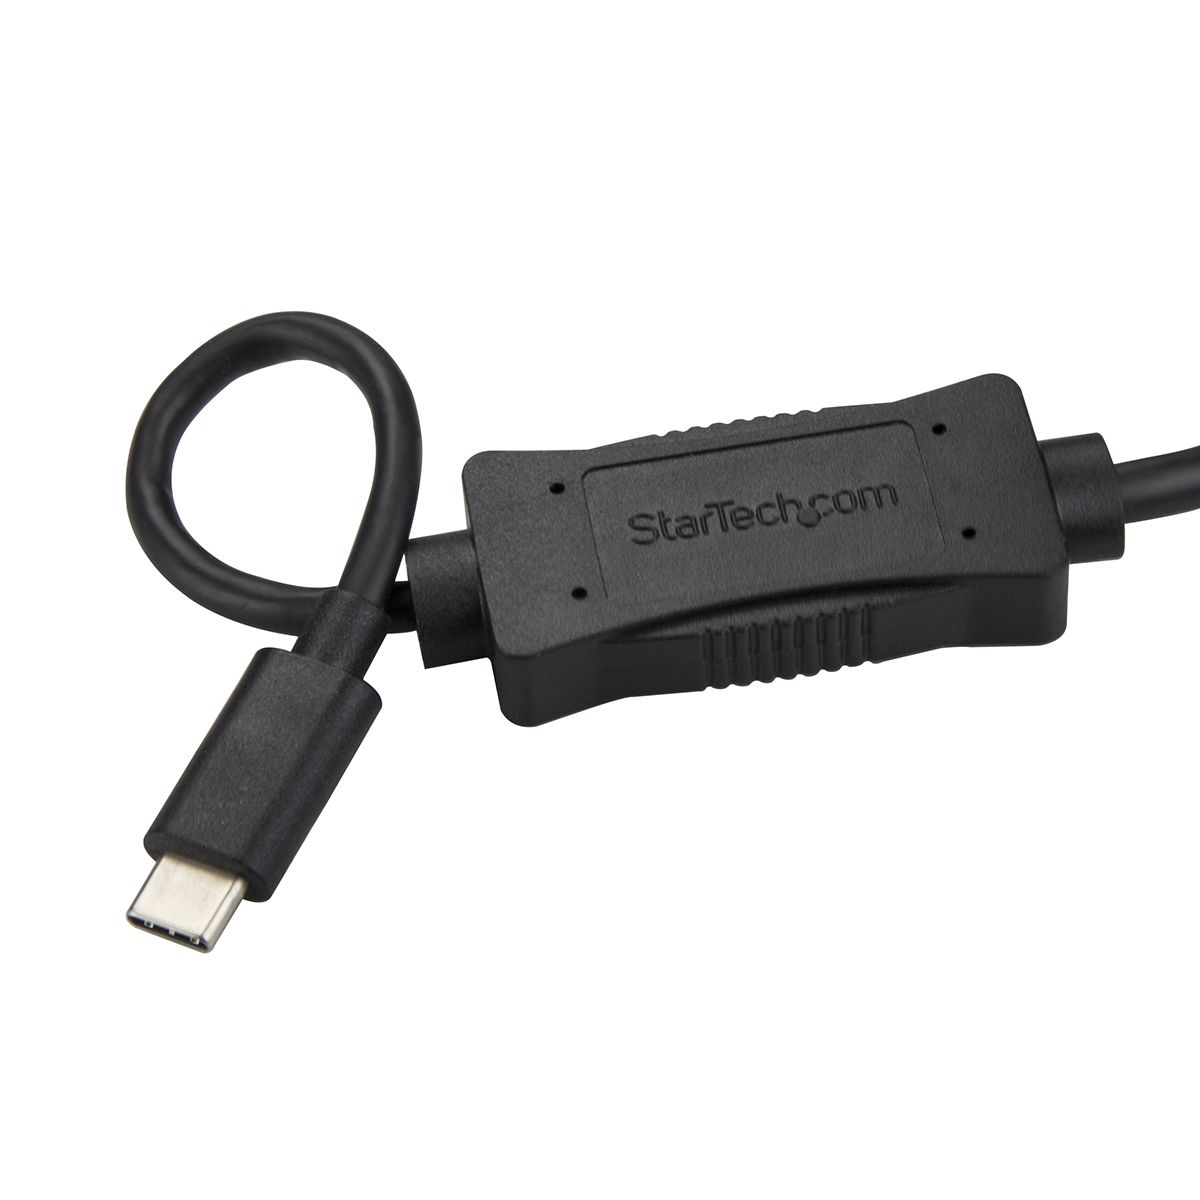 StarTech.com port USB 3.0 USB C to eSATA Cable